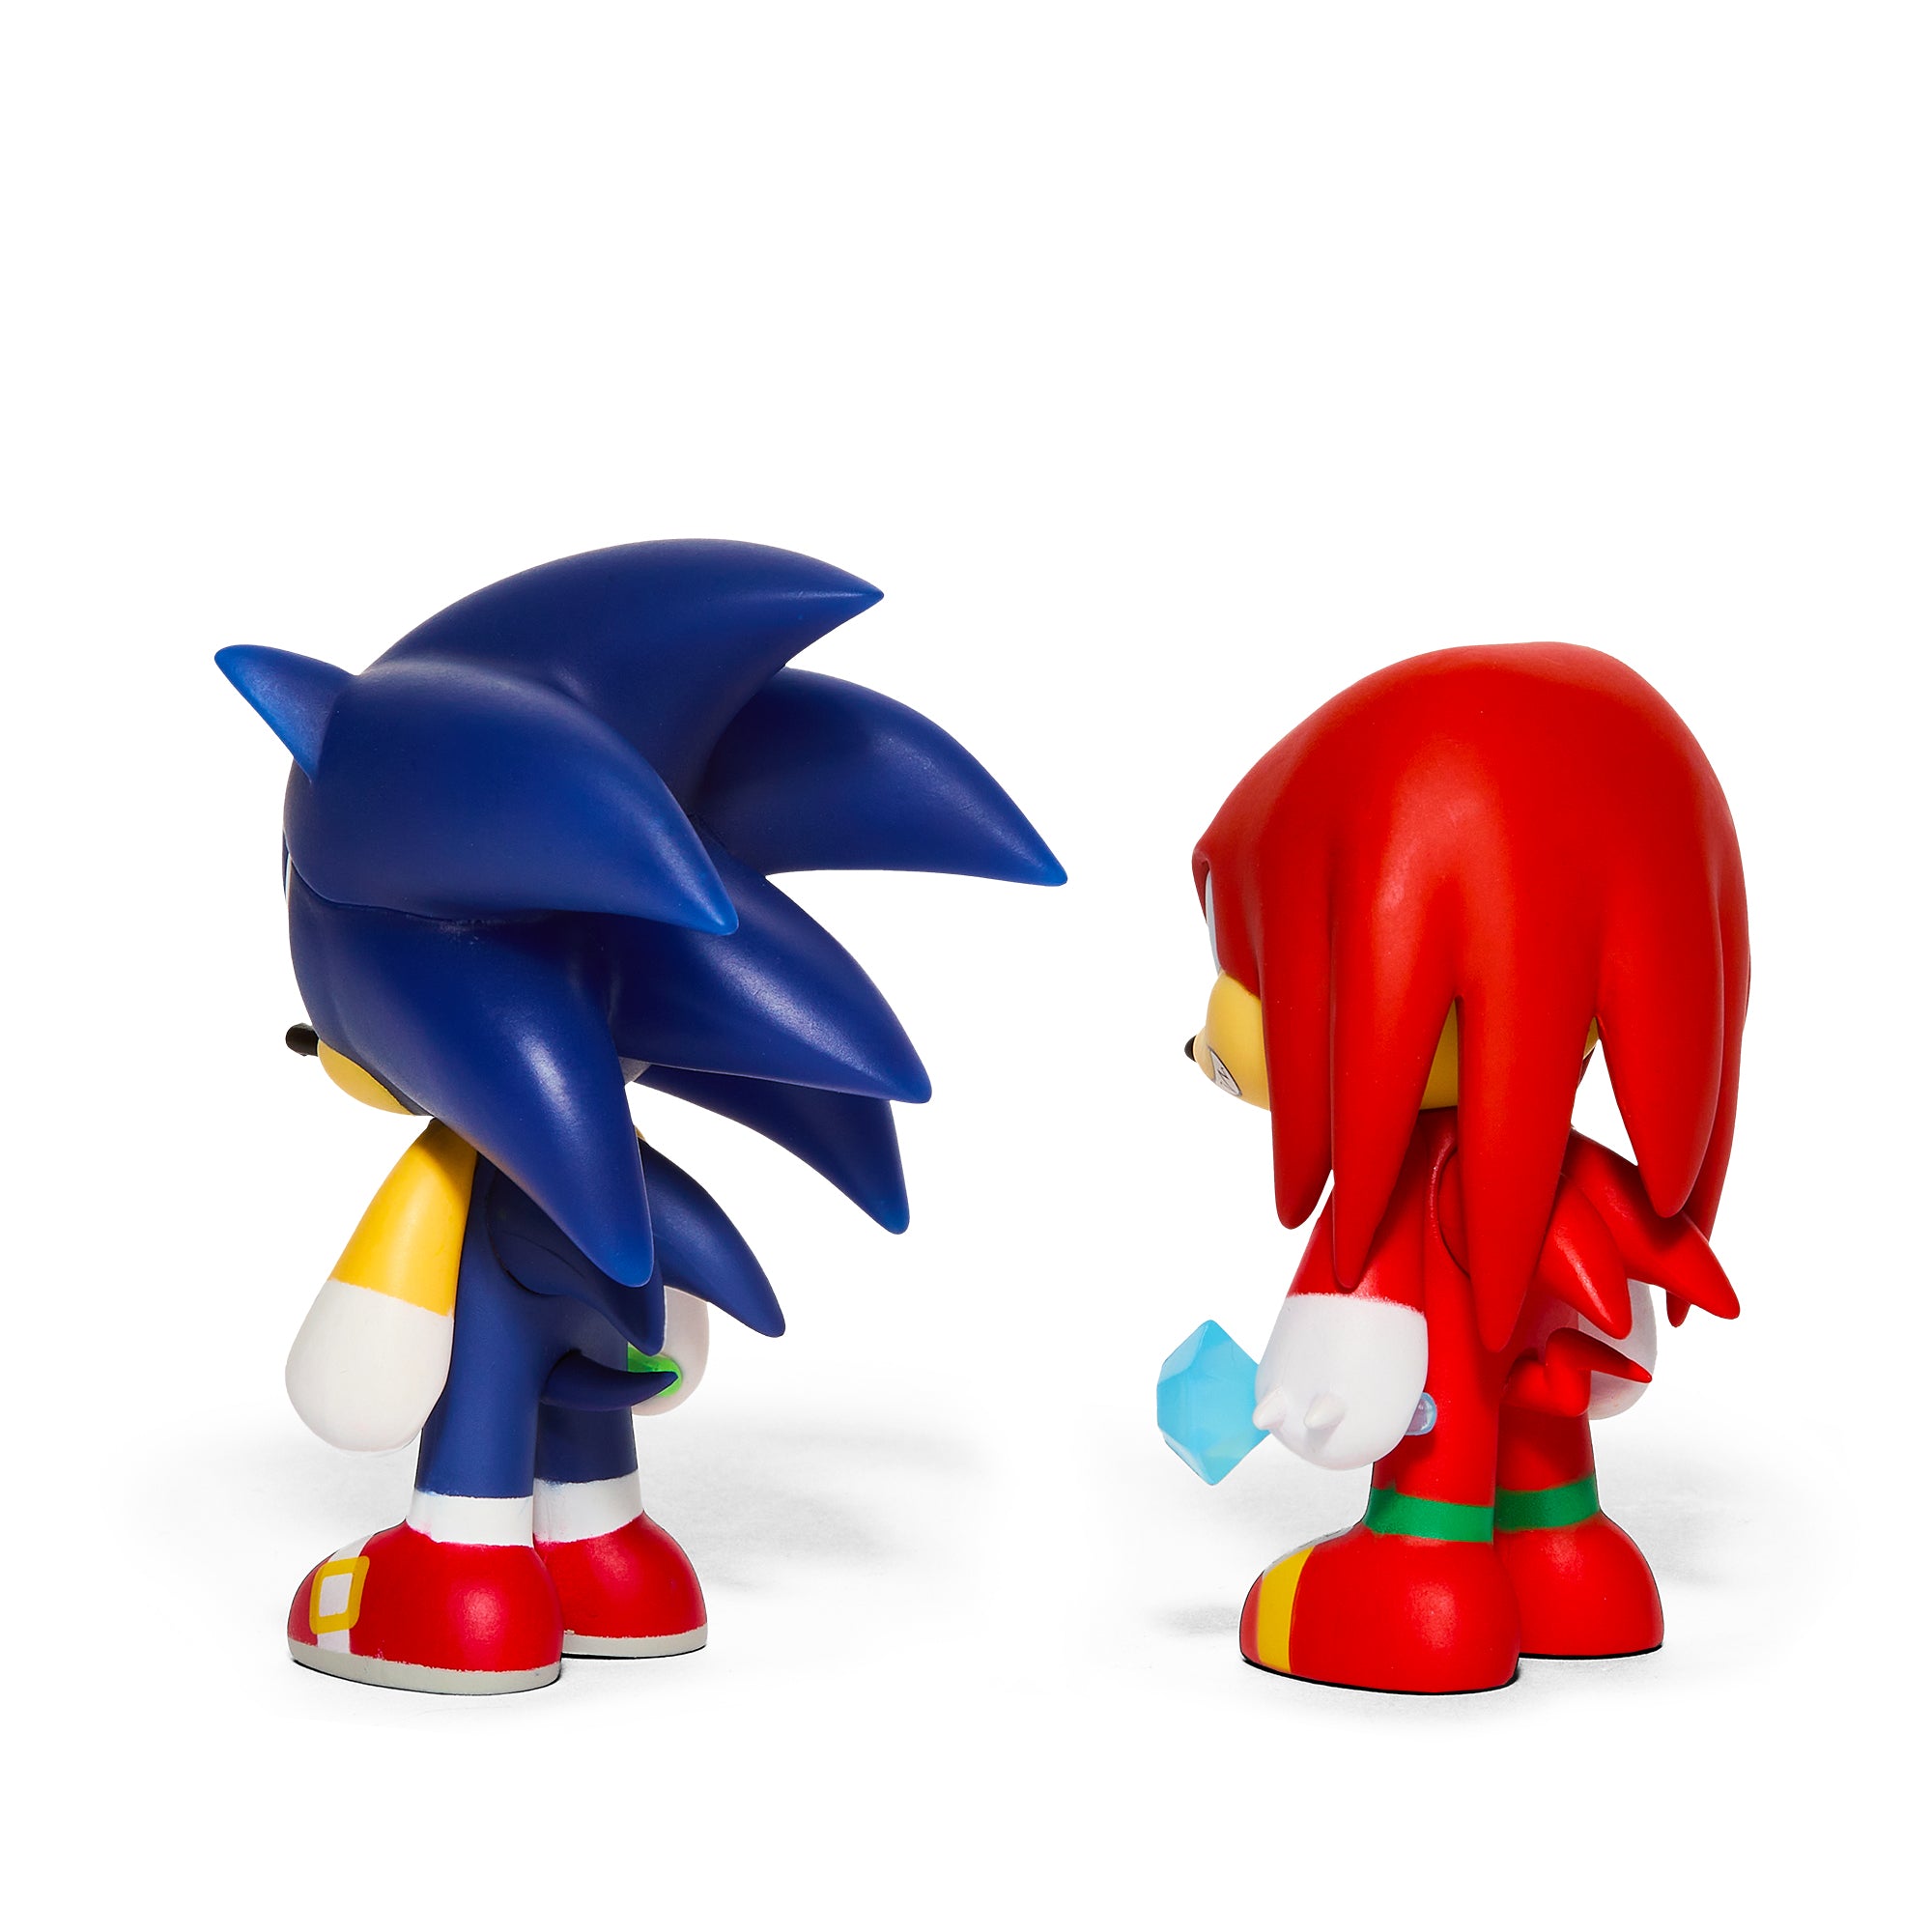 Sonic the Hedgehog 3" Vinyl Figure Sonic and Knuckles 2-Pack - Kidrobot - Shop Designer Art Toys at Kidrobot.com